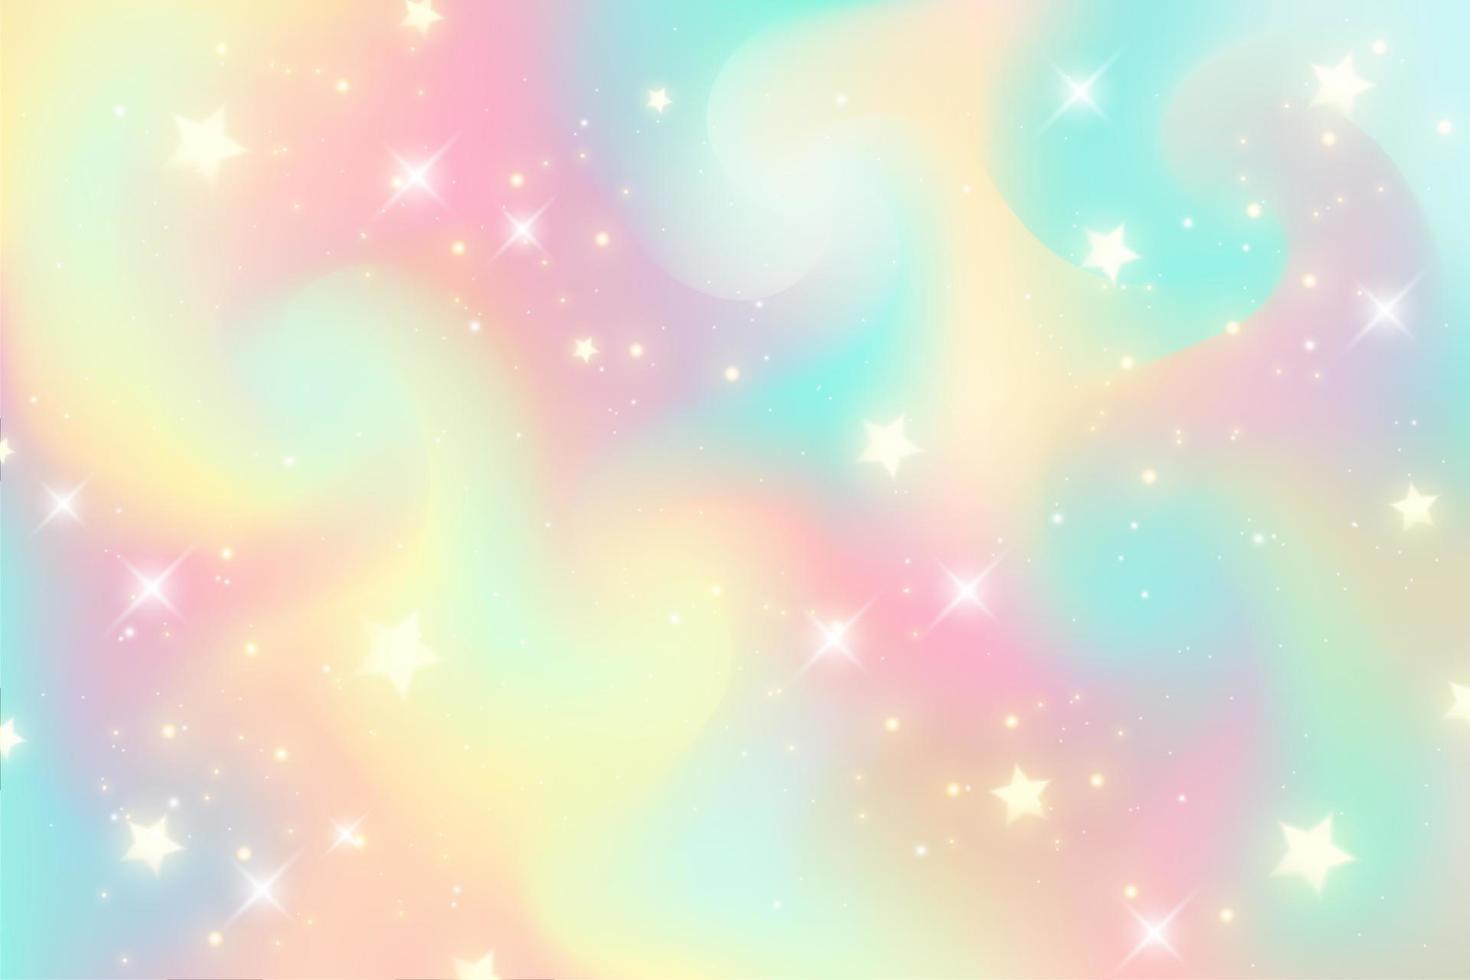 illustrazione dell'acquerello di fantasia con il cielo pastello dell'arcobaleno con le stelle. sfondo cosmico astratto di unicorno. illustrazione vettoriale di ragazza del fumetto.